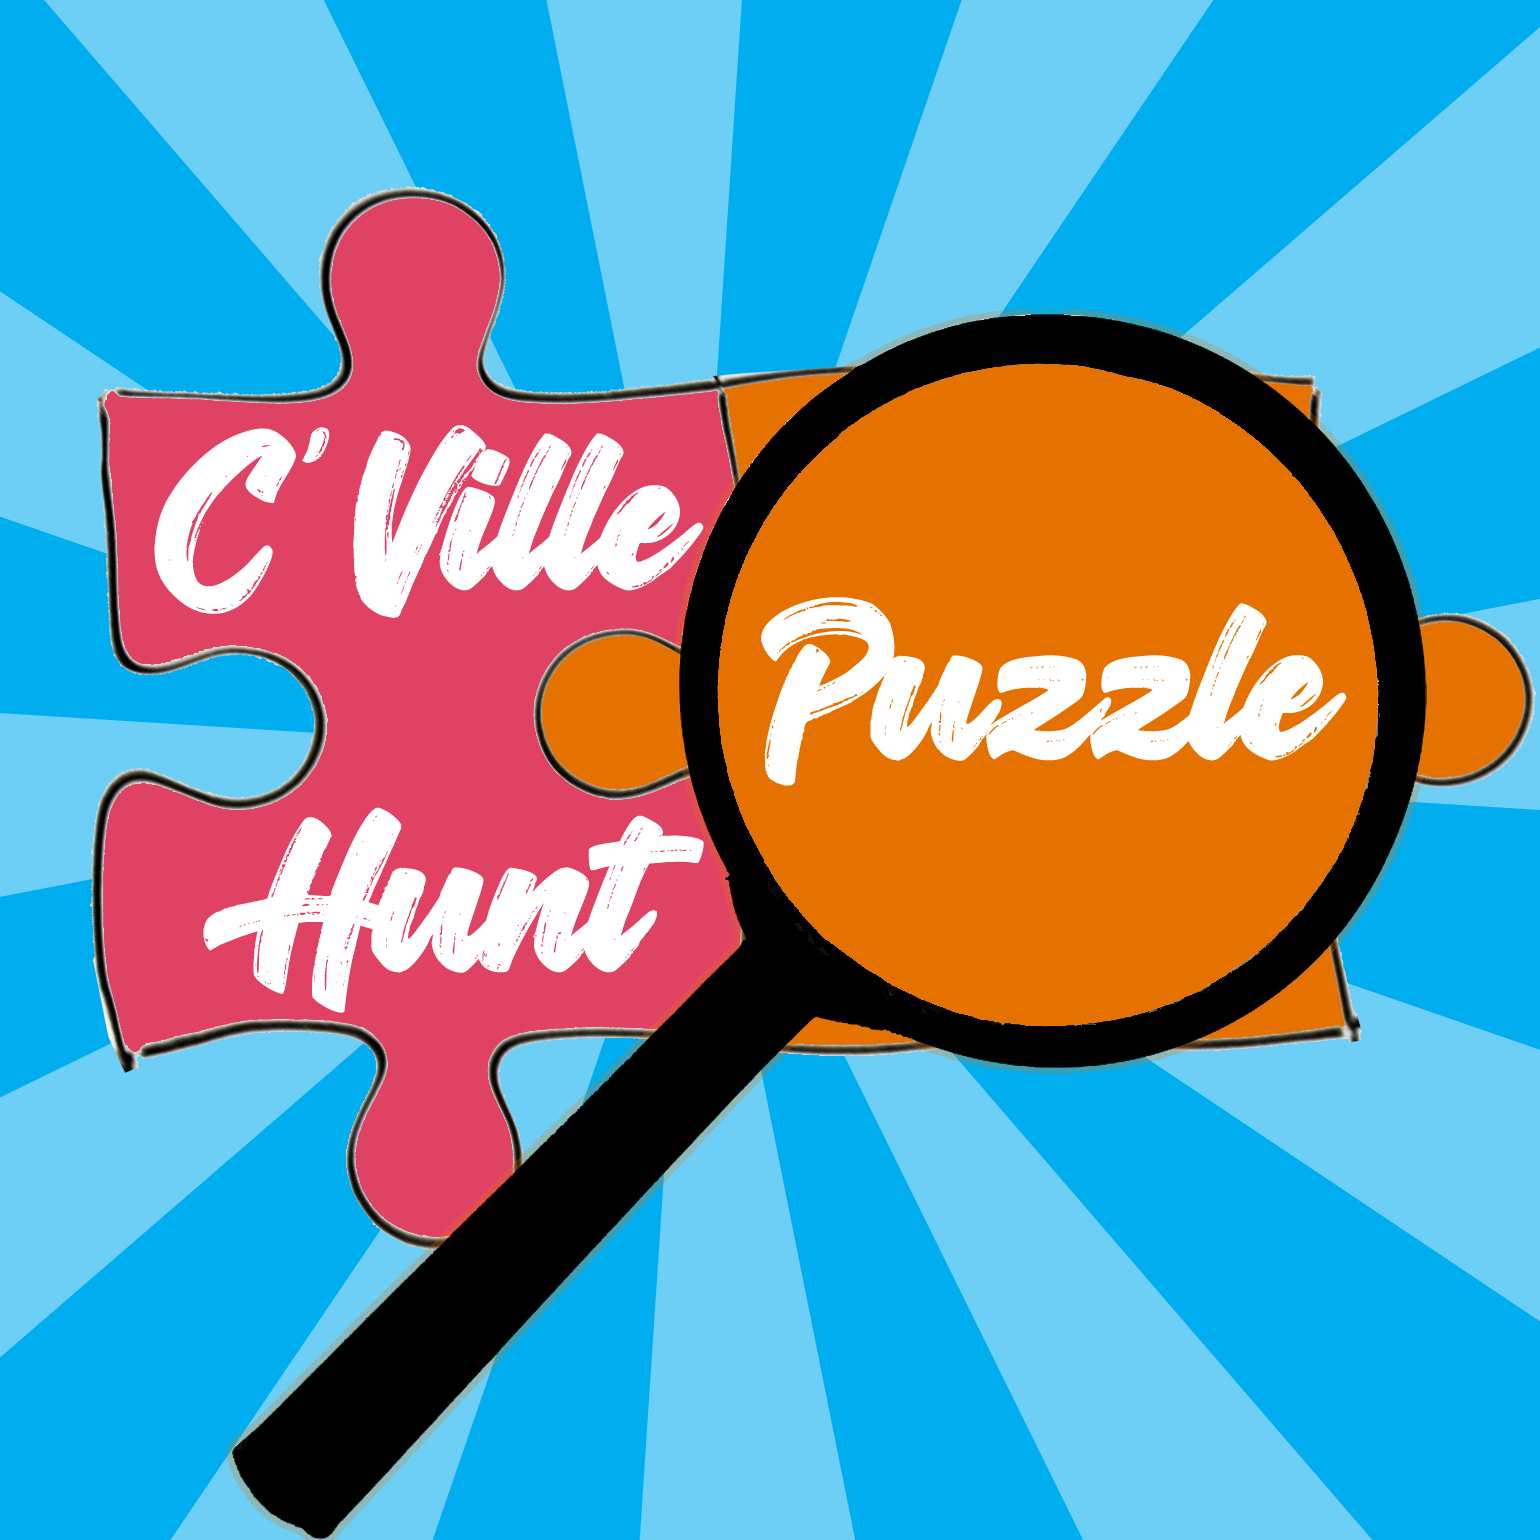 Cville Puzzle Hunt